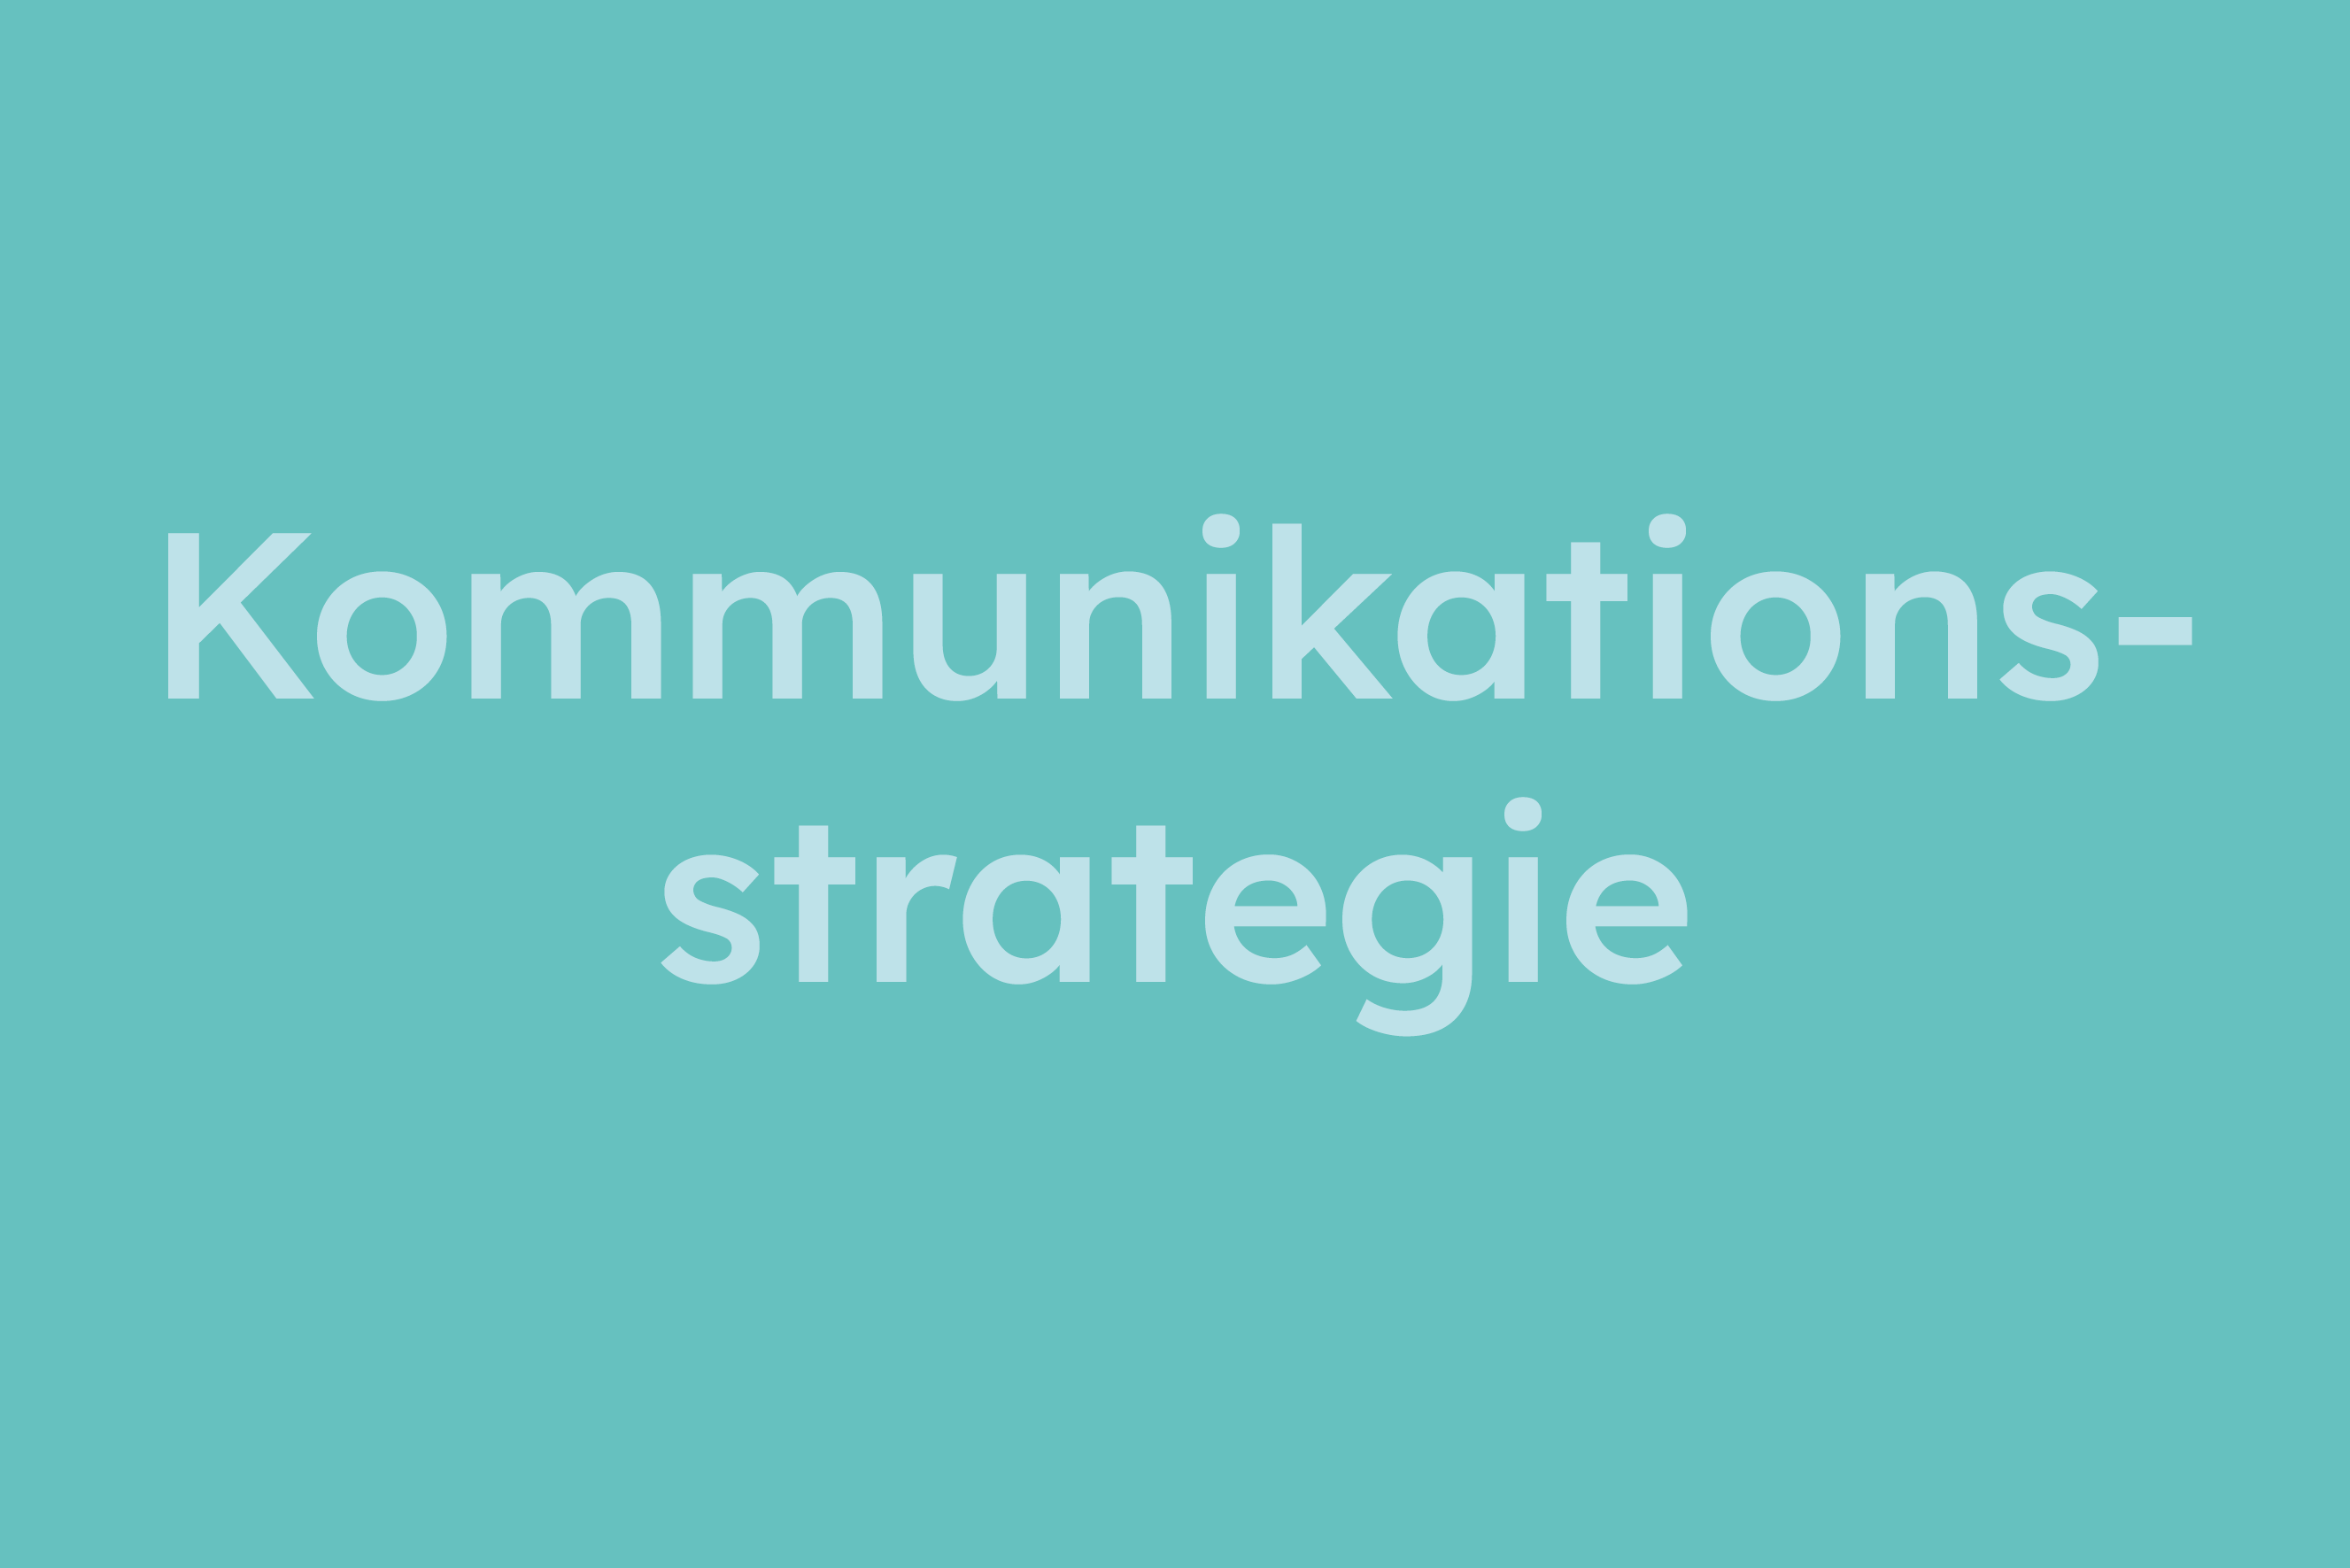 Kommunikationsstrategie erklärt im Glossar von Campaign